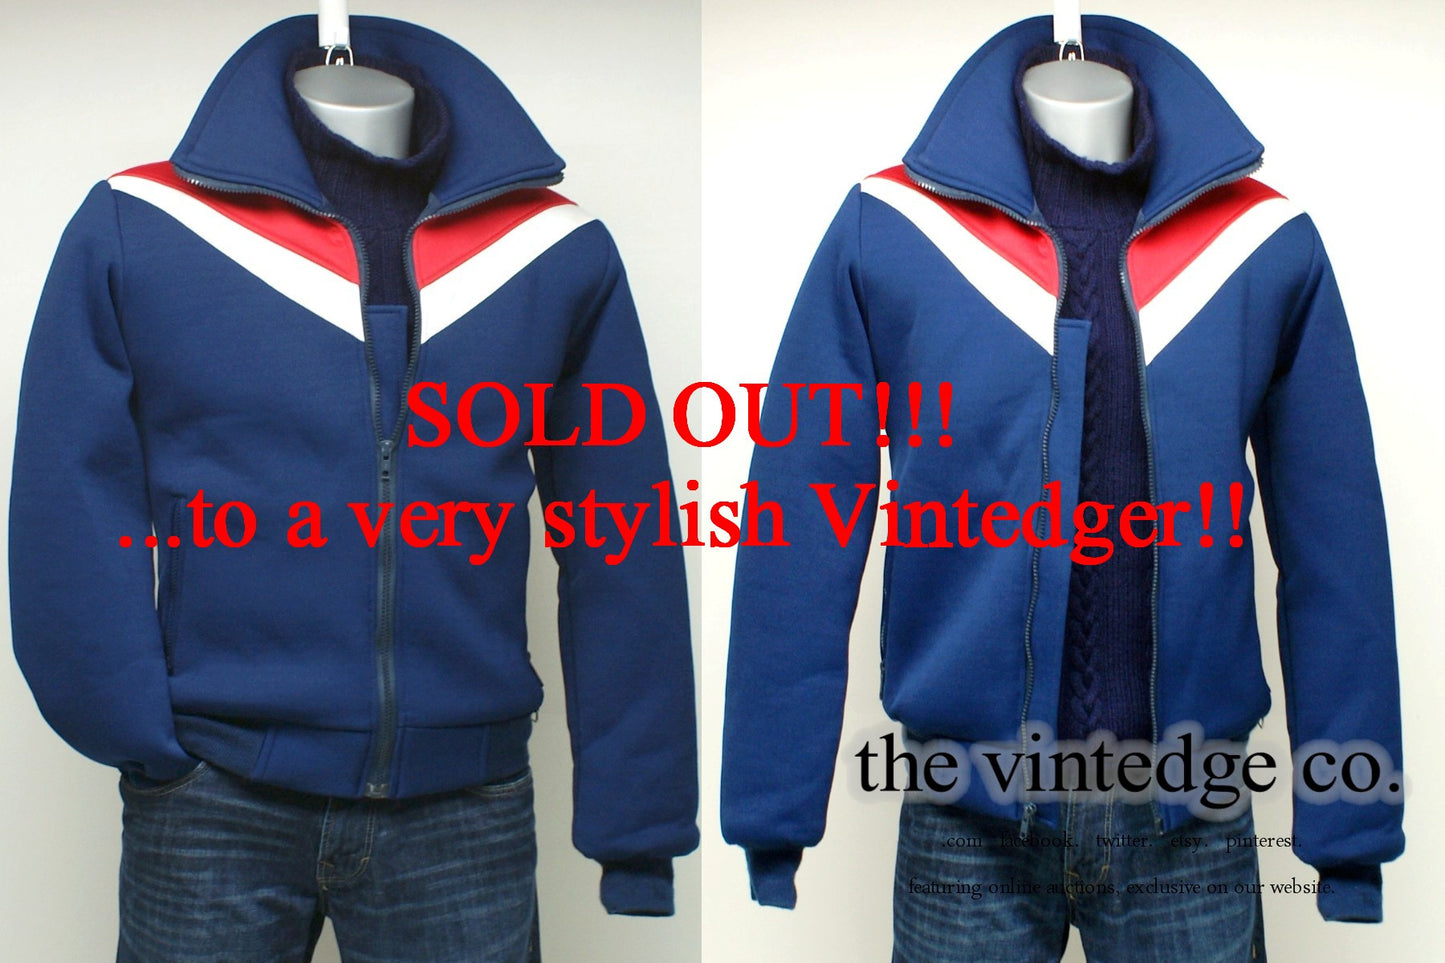 SOLD - Vintage Mens Ski Jacket The Vintedge Co.